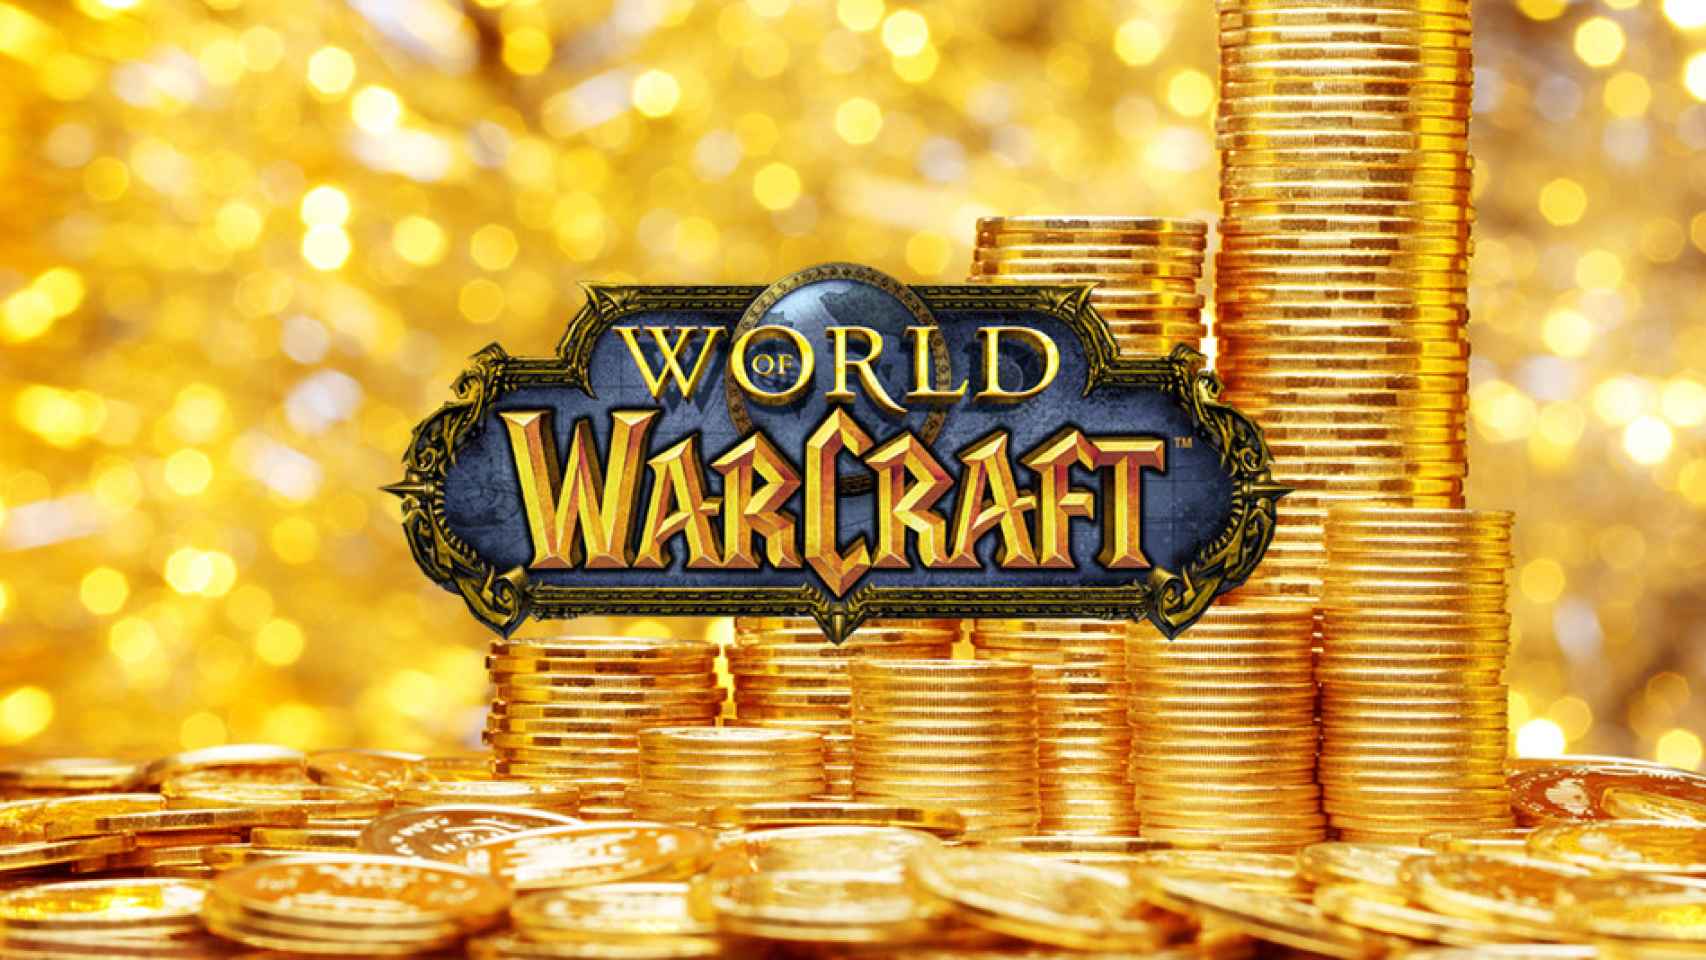 El oro de World of Warcraft vale 6,8 veces más que el bolívar venezolano / BLIZZARD